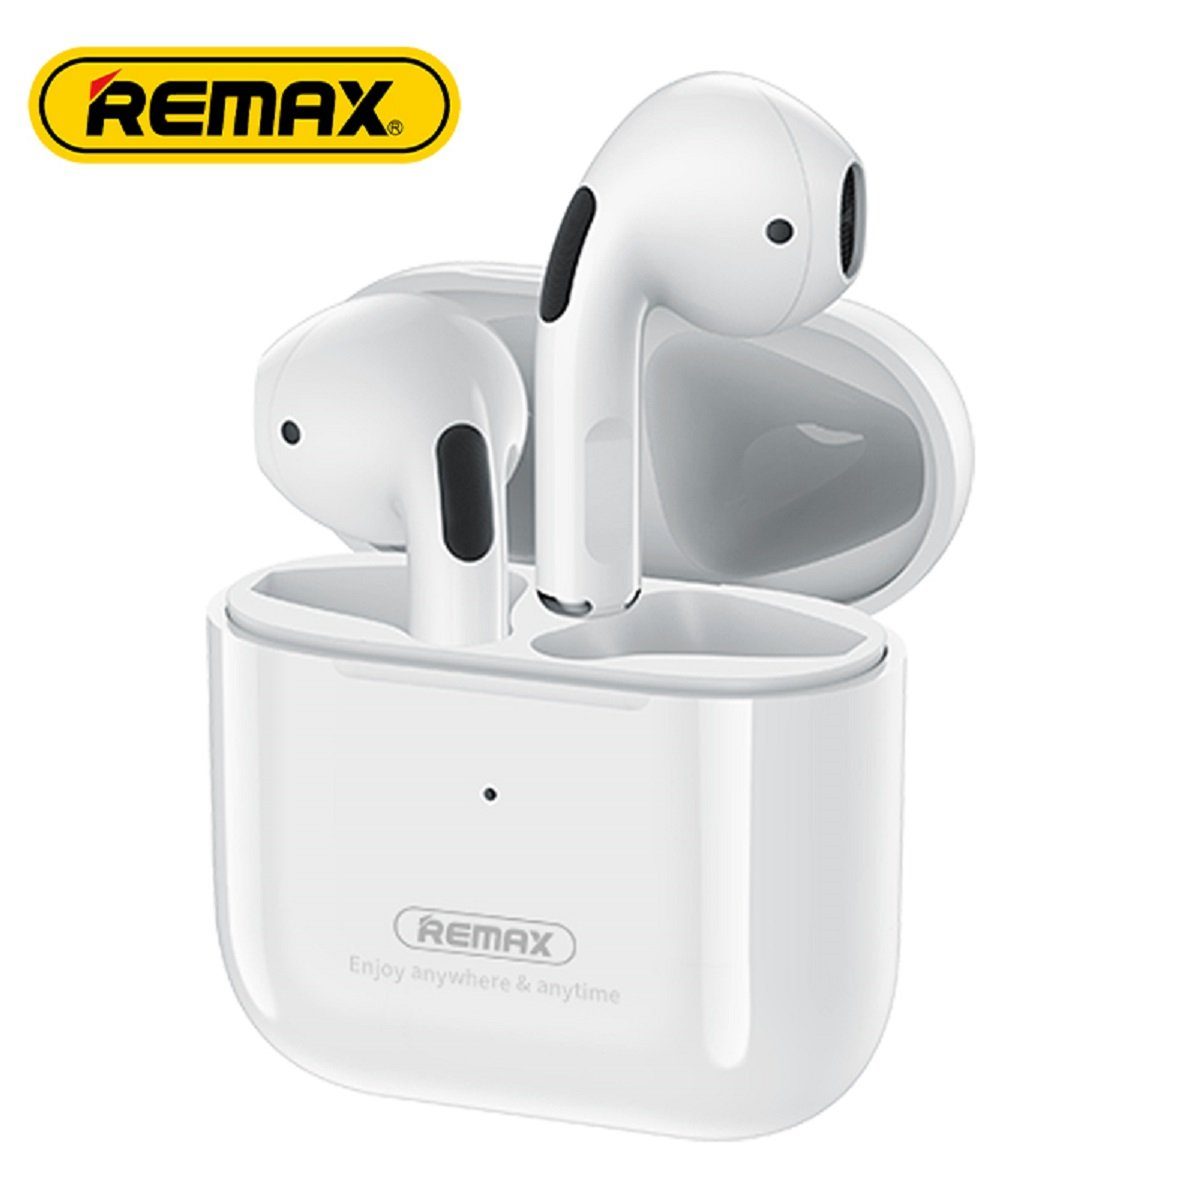 Remax TWS-10i 5.0 Kopfhörer True Wireless mit Ladecase für Smartphone (Weiß) Bluetooth-Kopfhörer (bluetooth, True Wireless, bluetooth, wasserdicht, Aktive Geräuschunterdrückung)